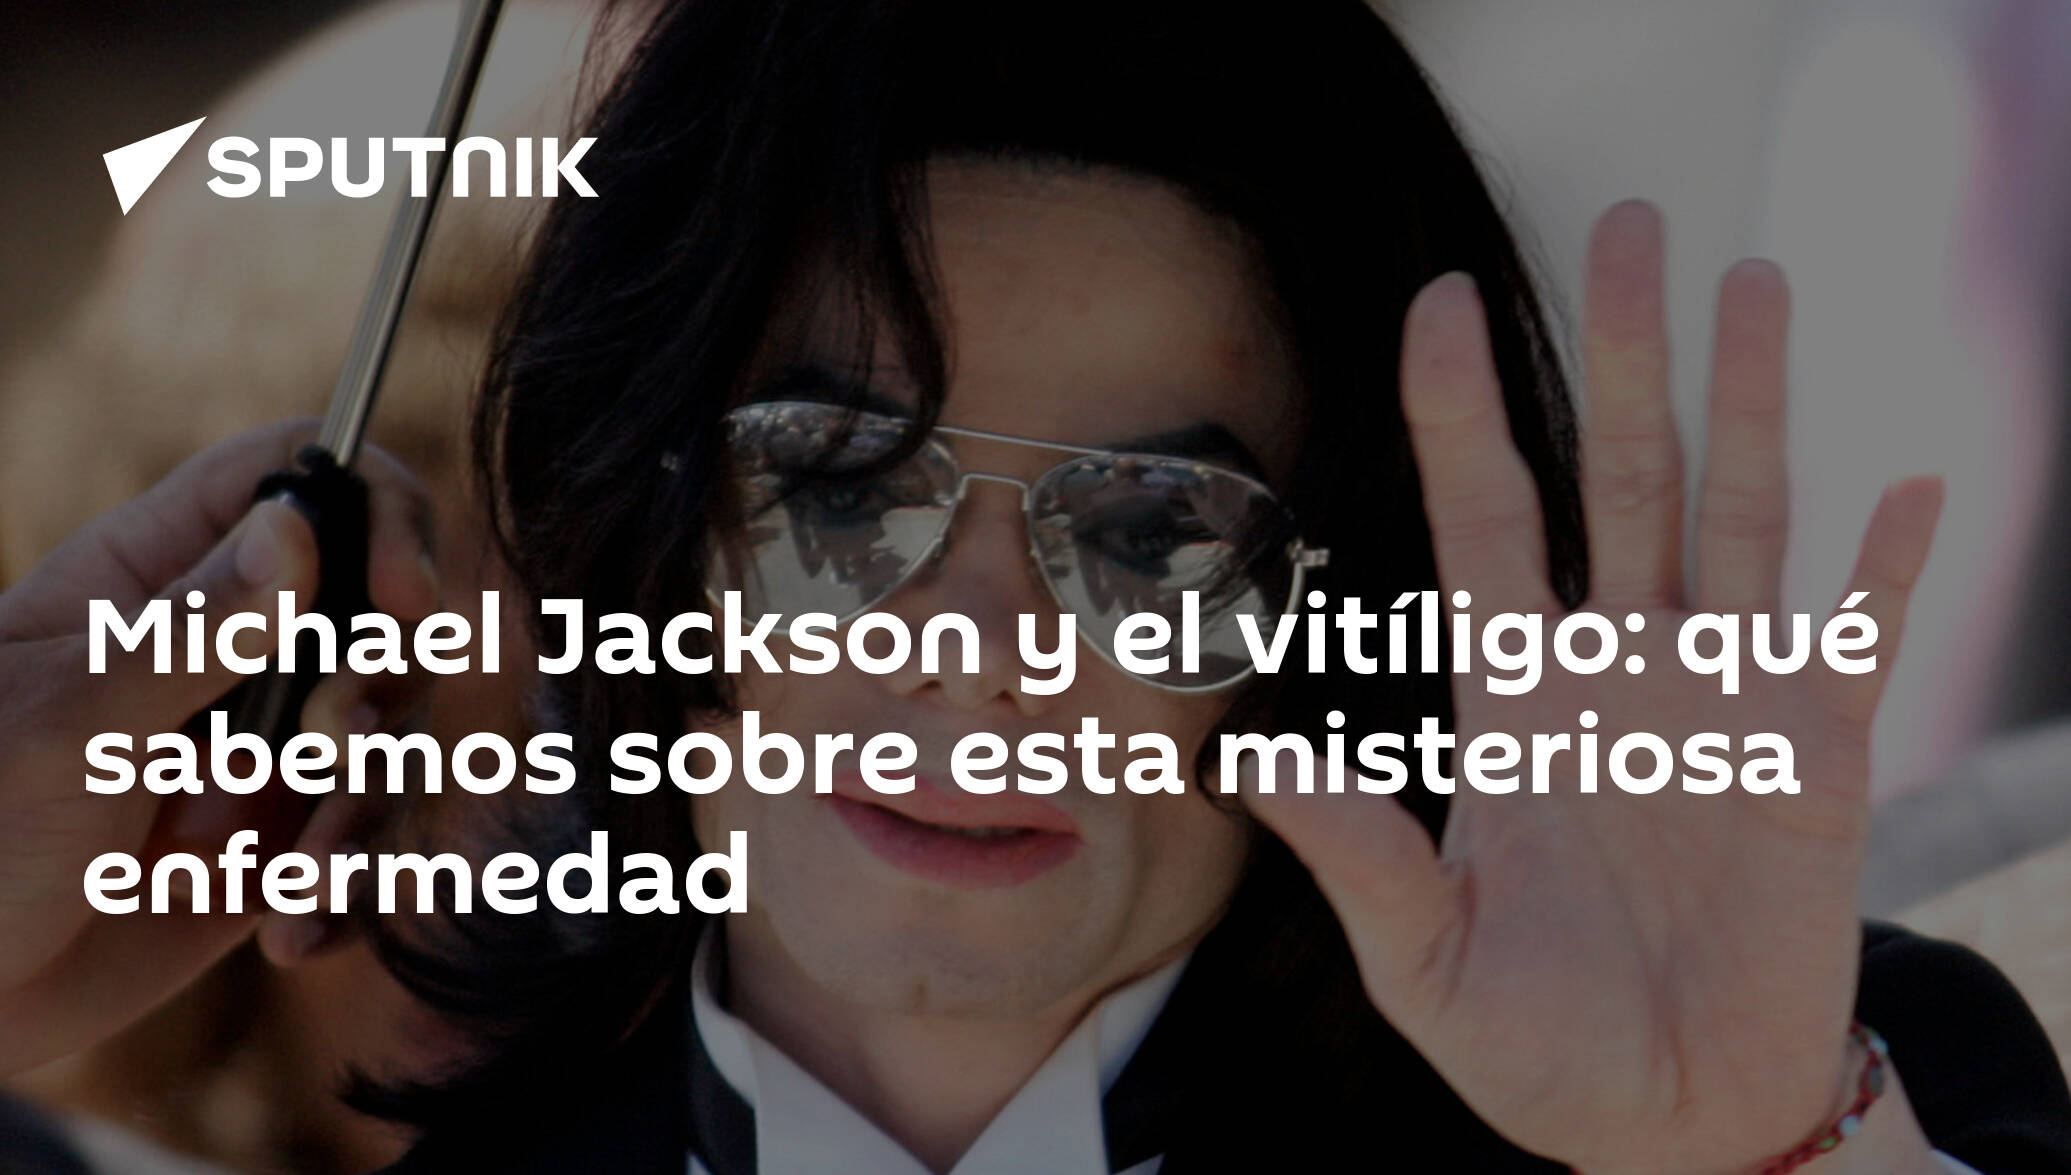 Michael Jackson Y El Vitíligo Qué Sabemos Sobre Esta Misteriosa